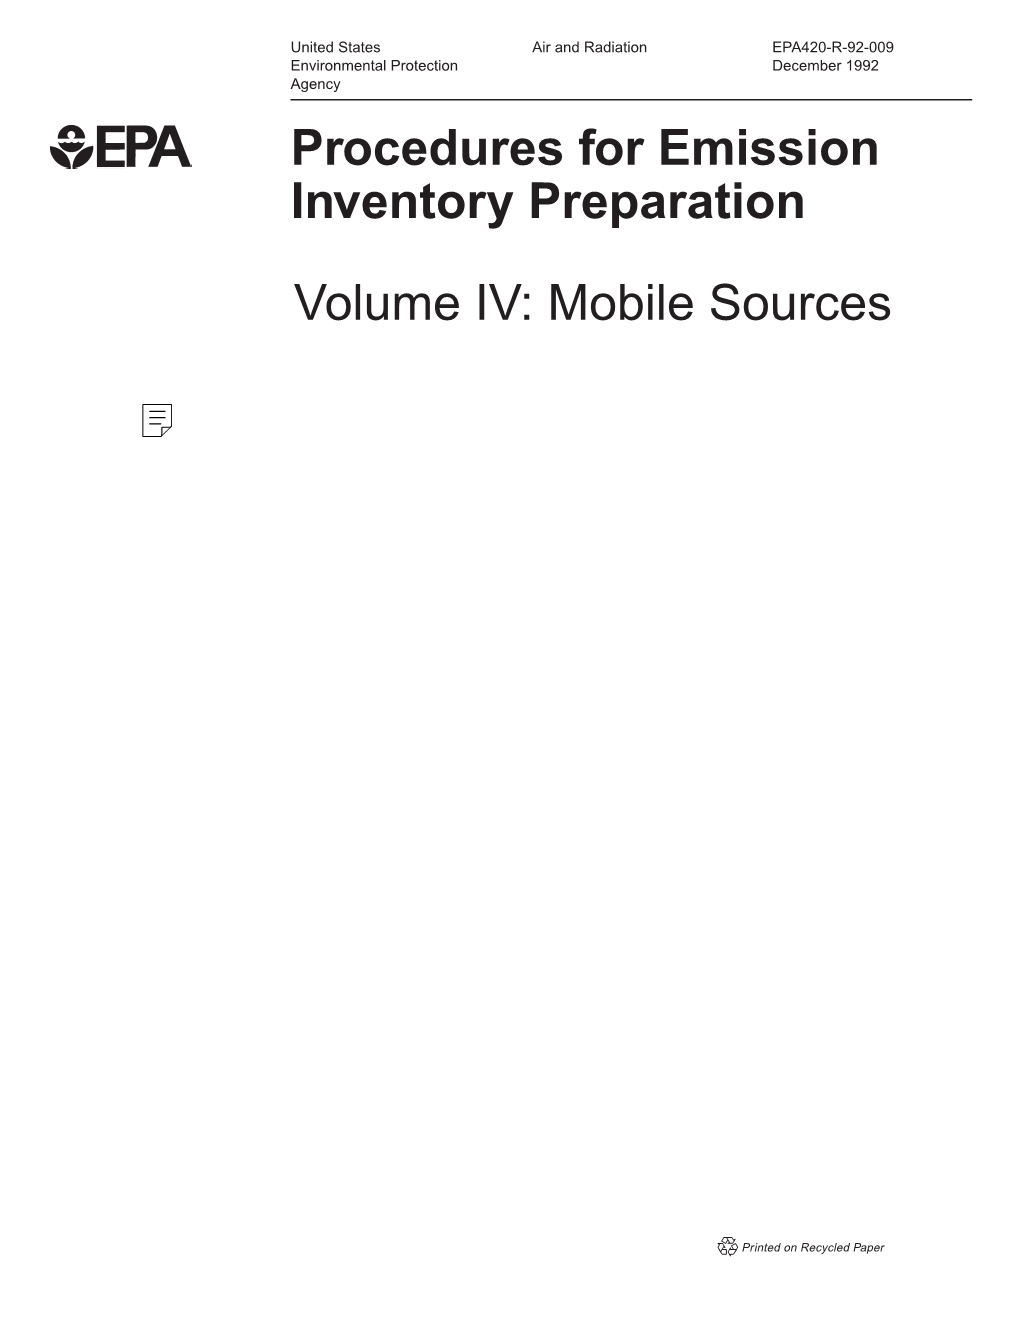 Procedures for Emission Inventory Preparation Volume IV: Mobile